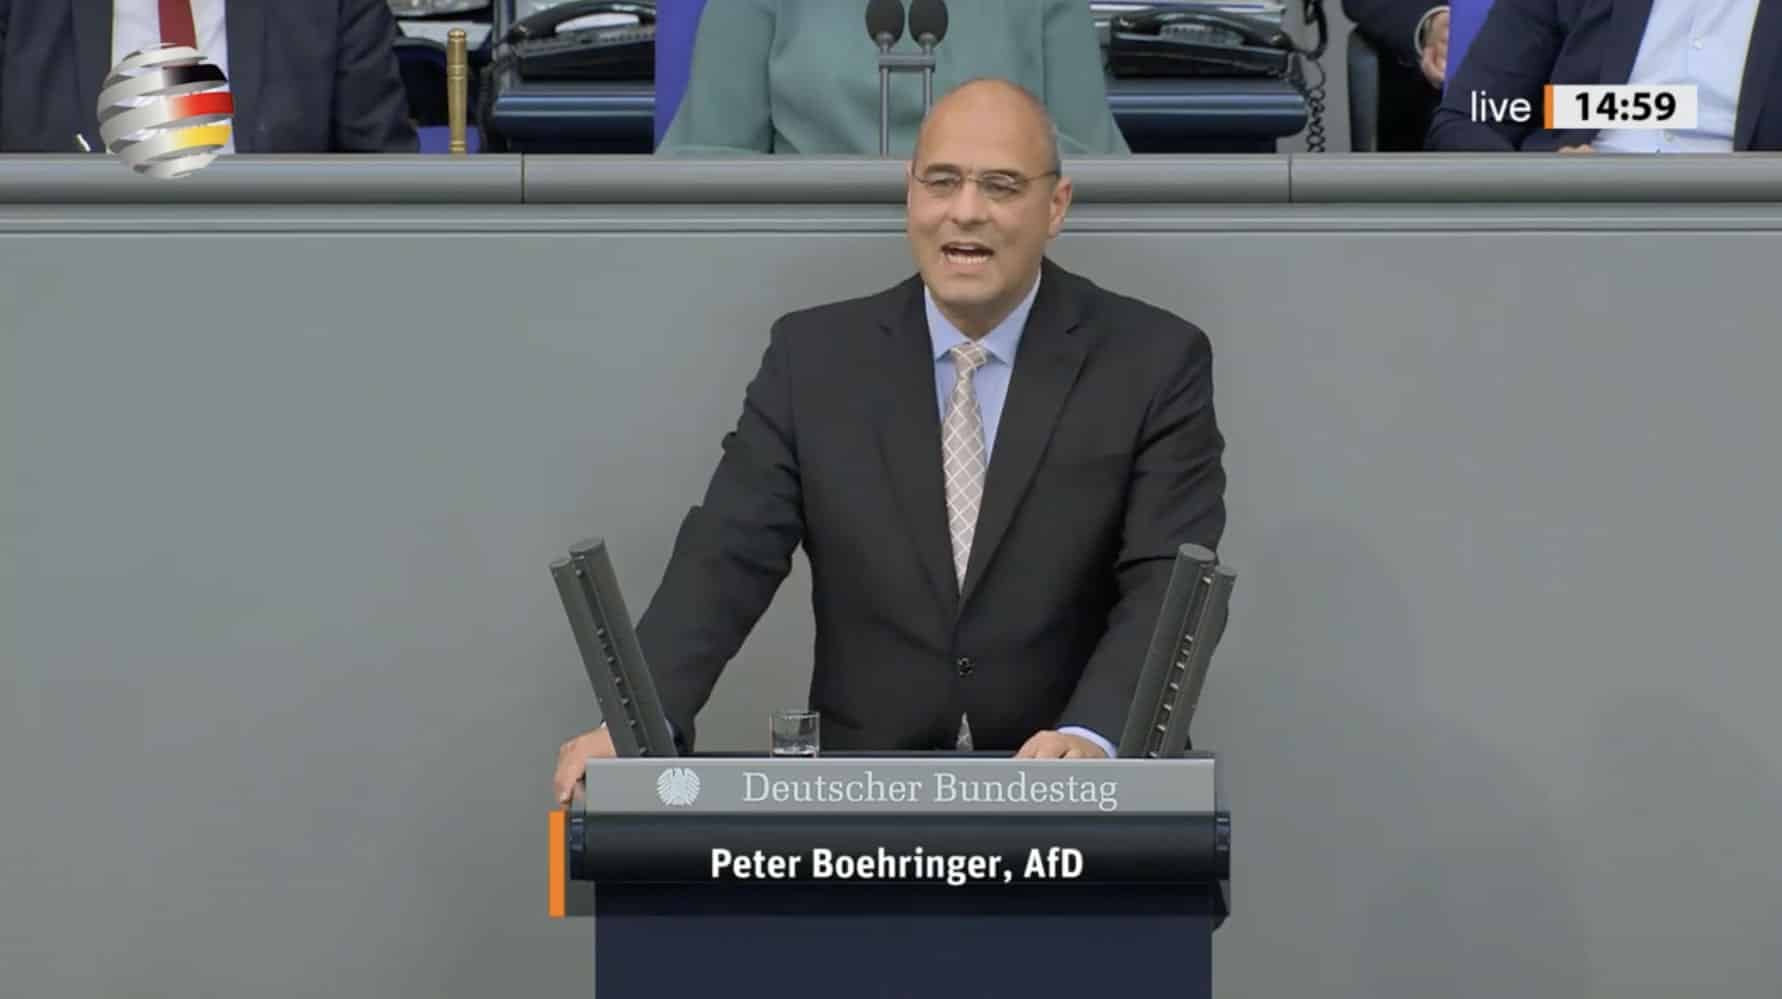 peter-boehringer-(afd):-„fuehren-sie-endlich-eine-politik-ohne-ideologie-zum-wohl-deutschlands!